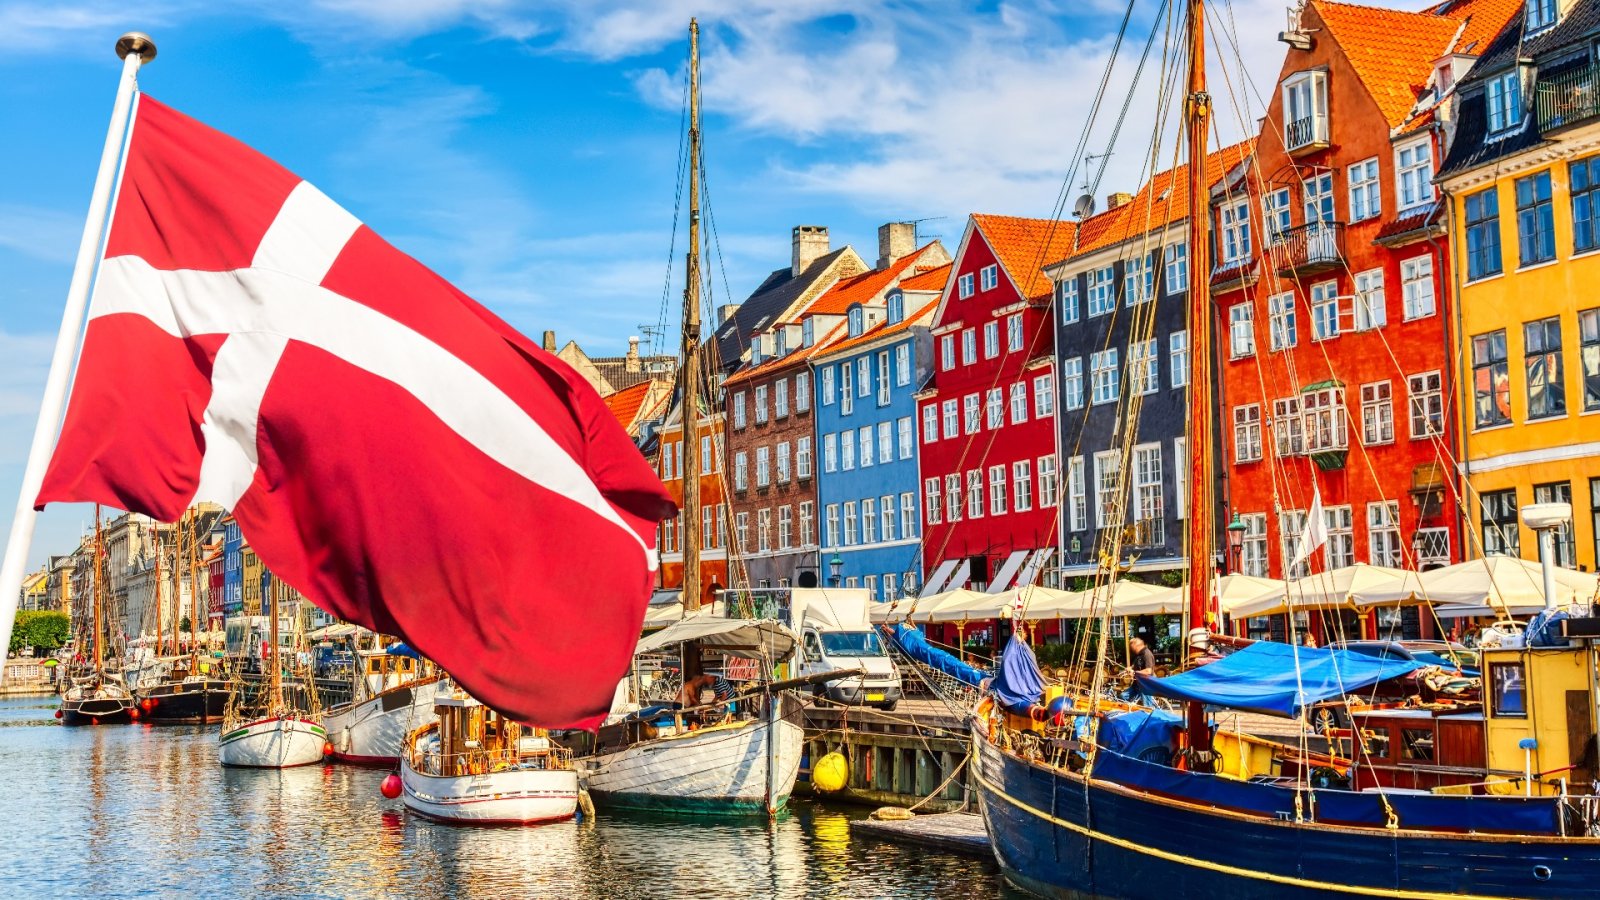 Menő útmutató Koppenhága meglátogatásához: fedezzen fel egy divatos és fenntartható várost